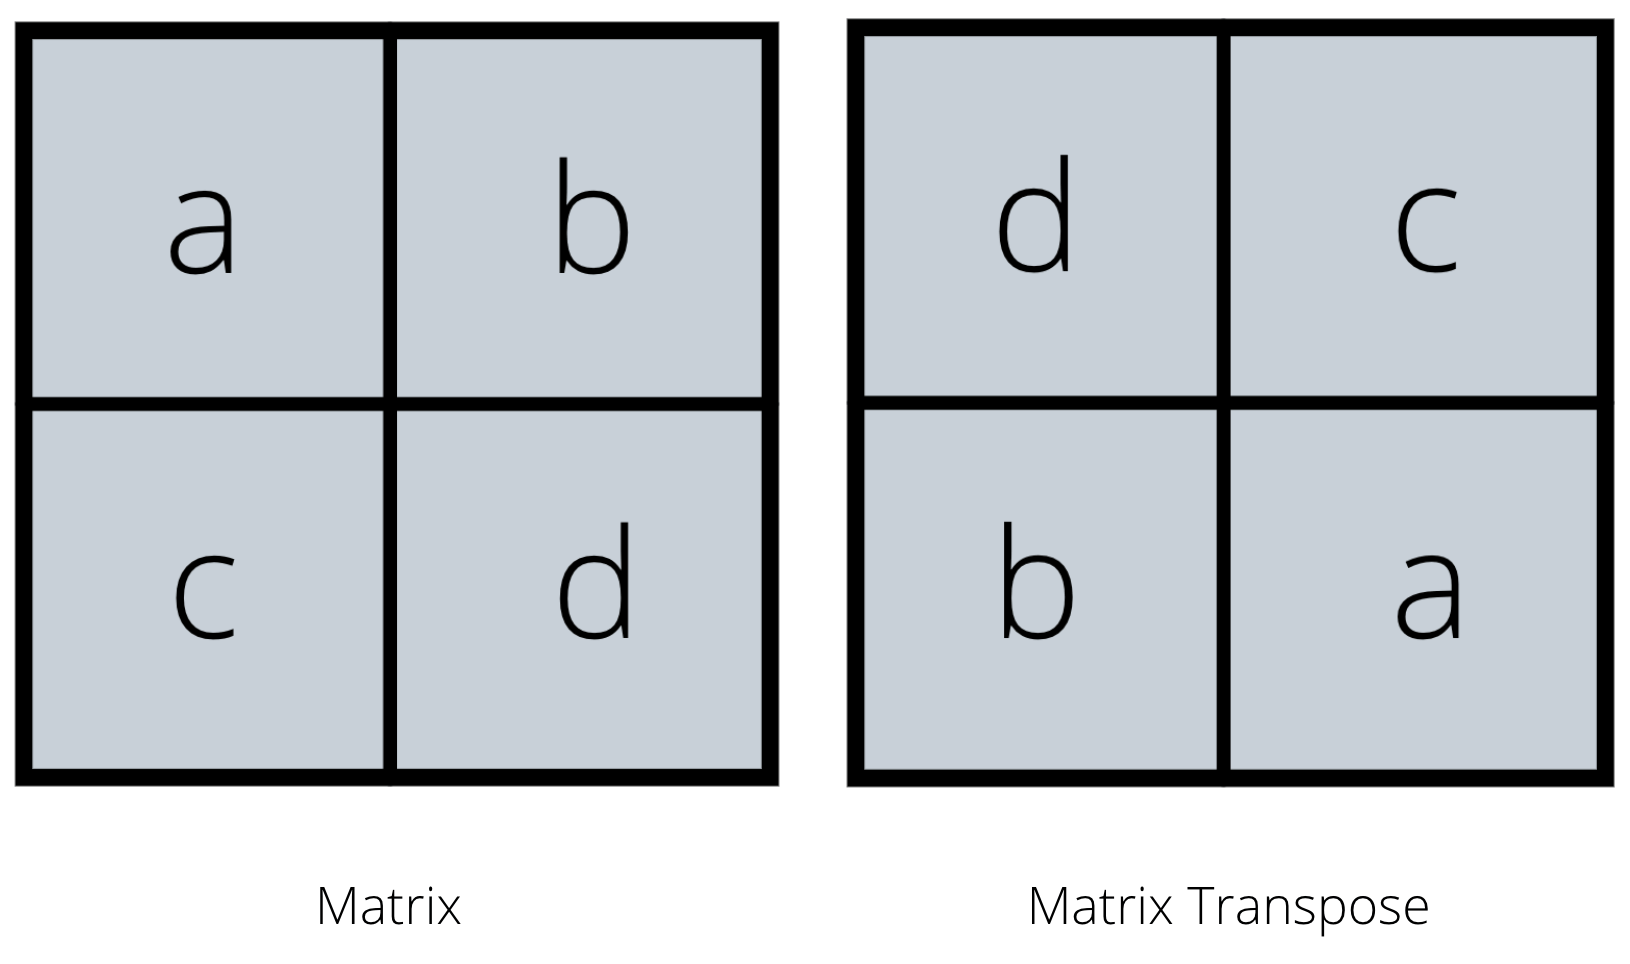 demostración de matriz